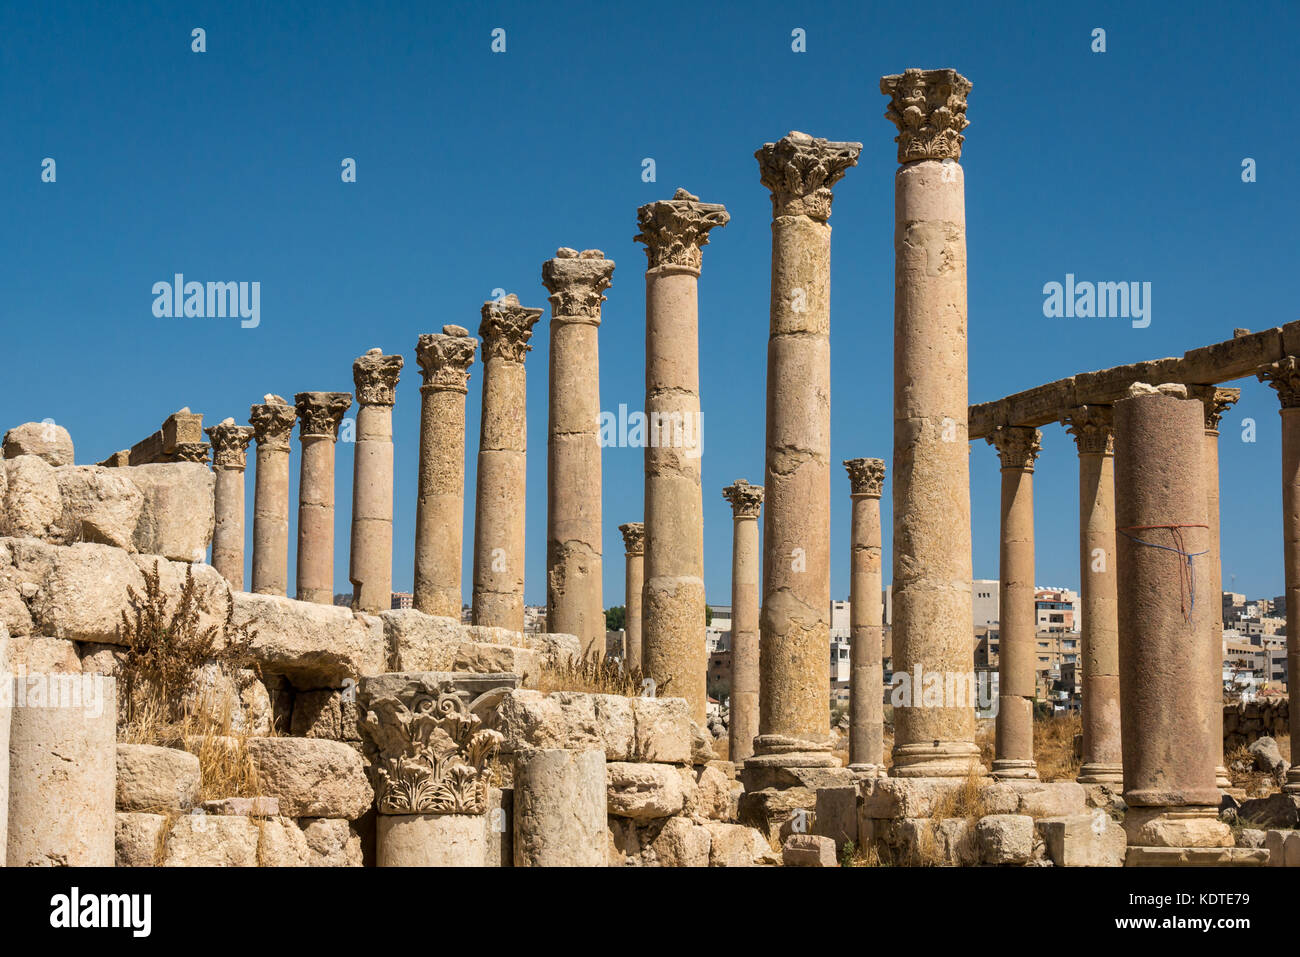 Cardo avec colonnes corinthiennes, ville romaine de Jerash, Gérasa antique, site archéologique et touristique, Jordanie, Moyen-Orient Banque D'Images